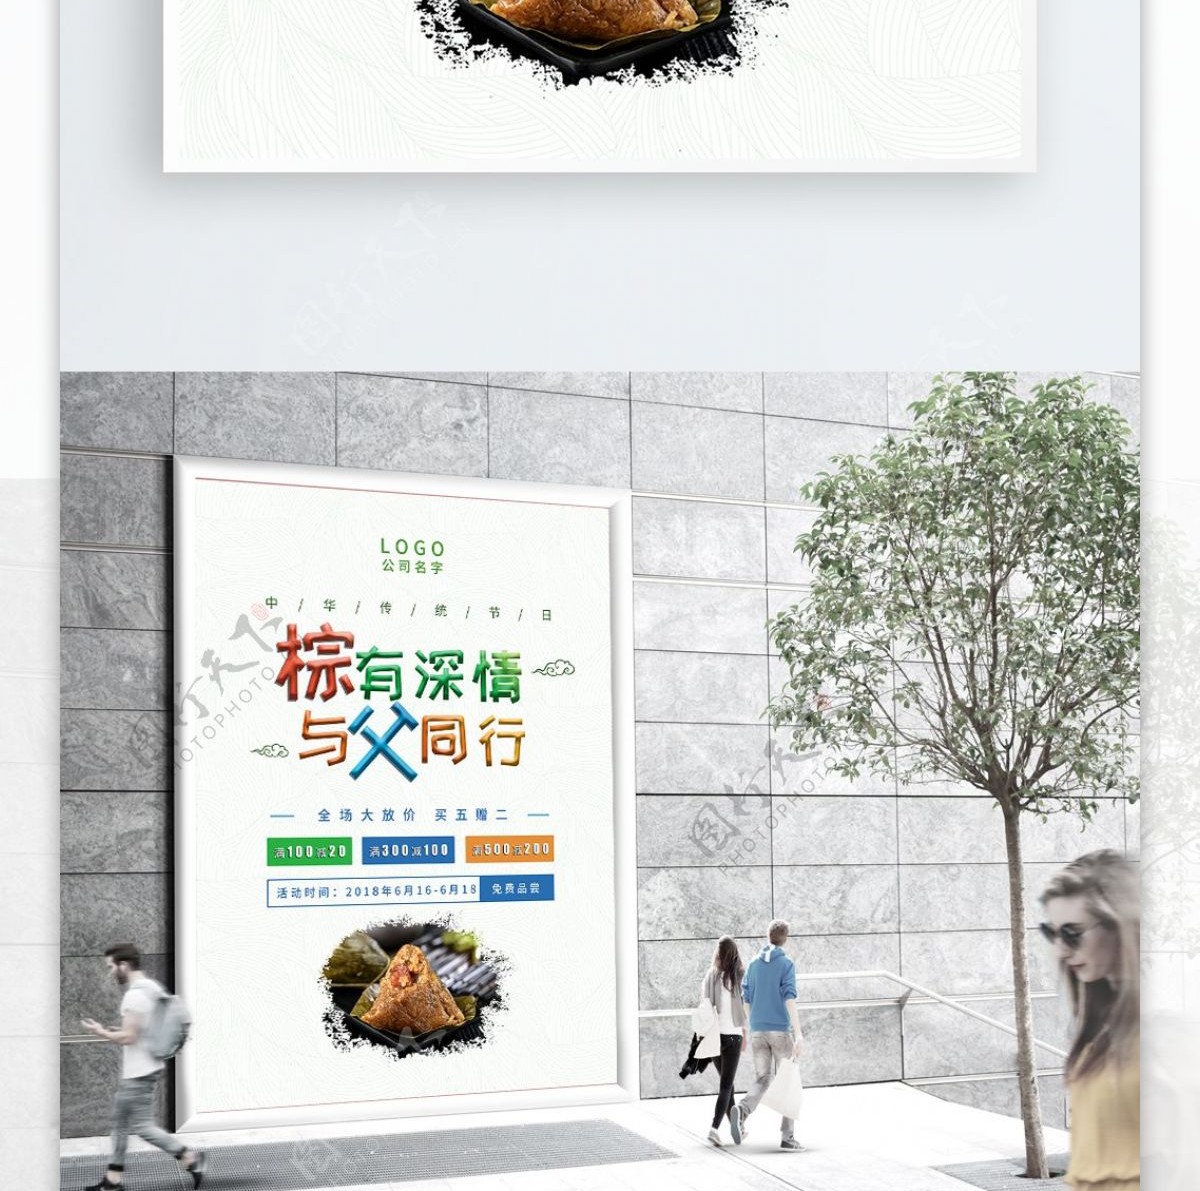 端午节中国风活动海报